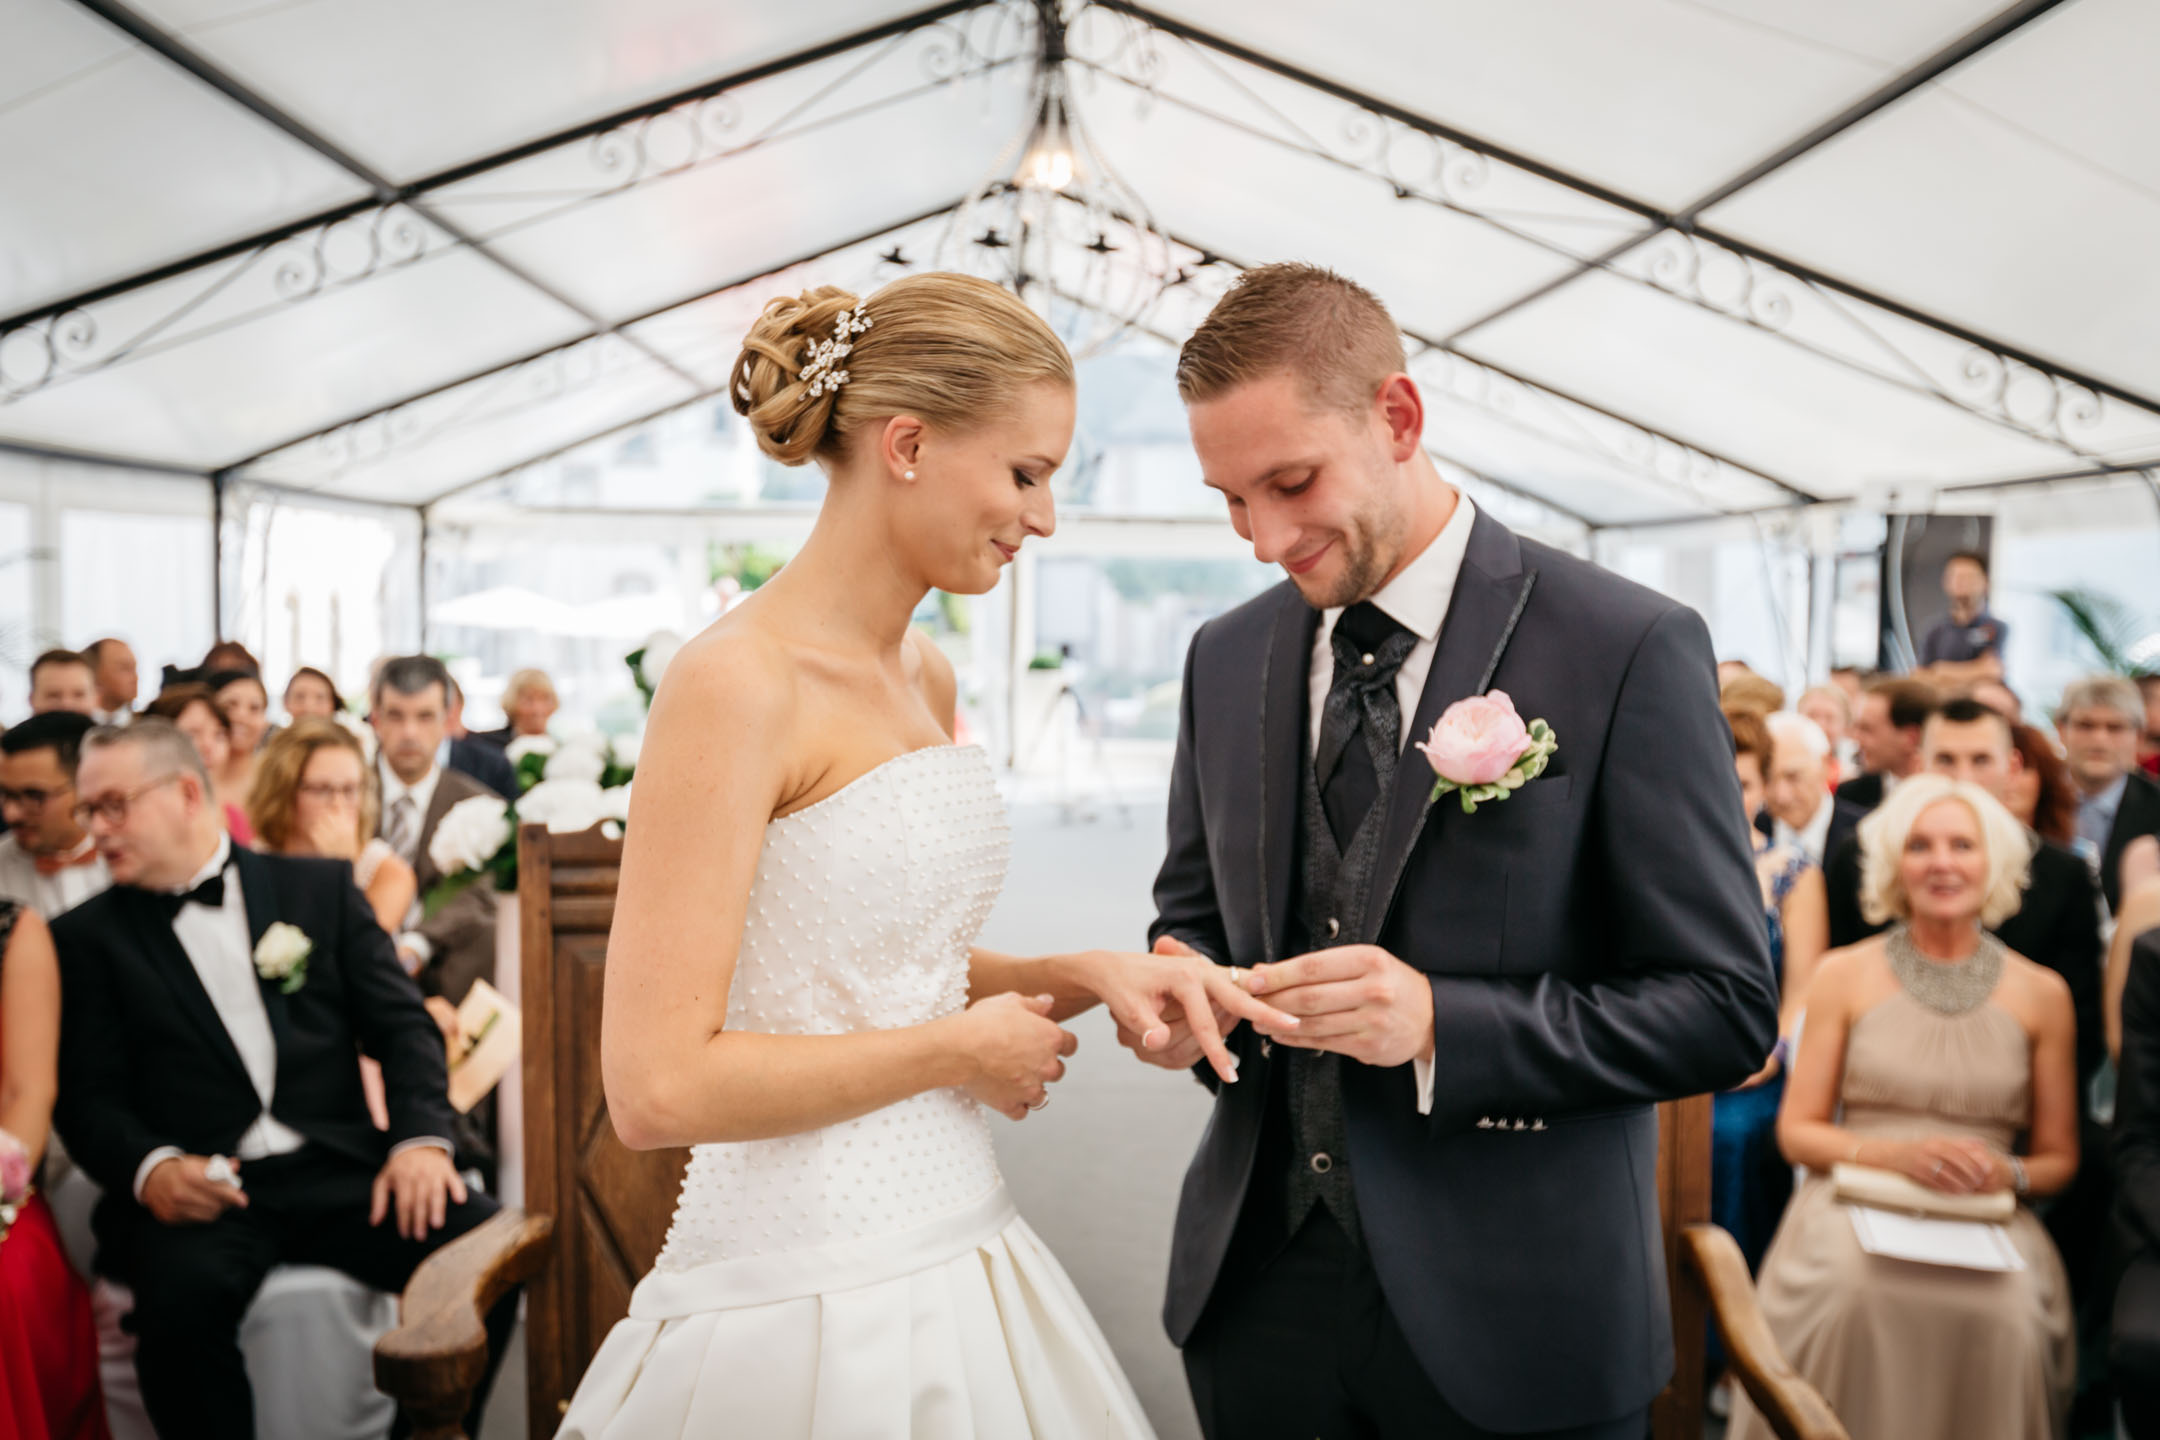 Photo du moment où le marié passe la bague au doigt de la mariée